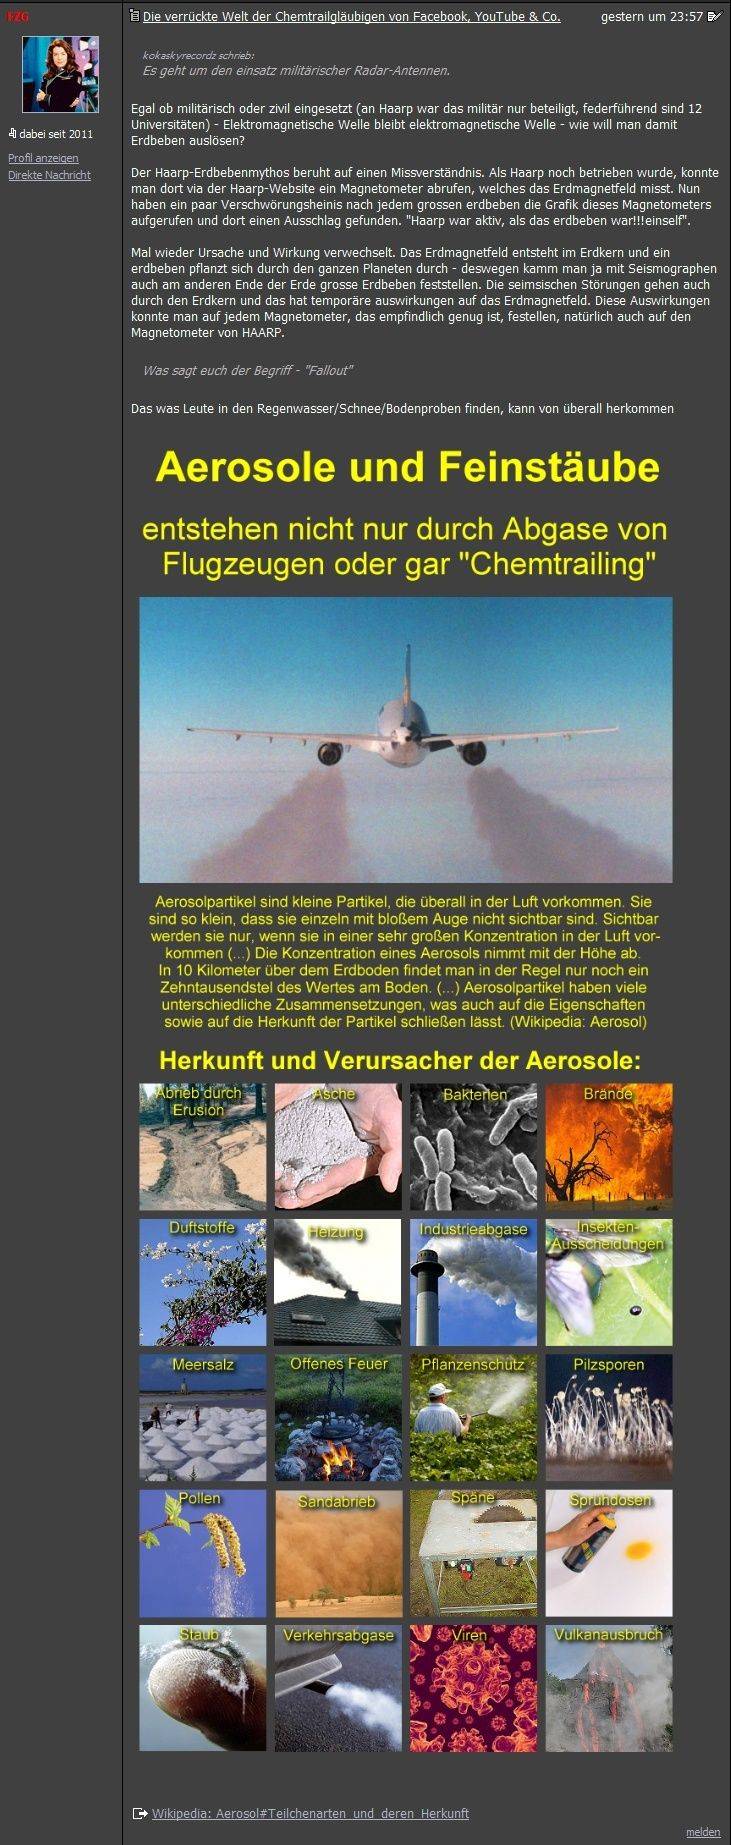 Der Chemtrail-Hauptthread & sein lustiger Ableger auf Allmystery.de Die_ve13